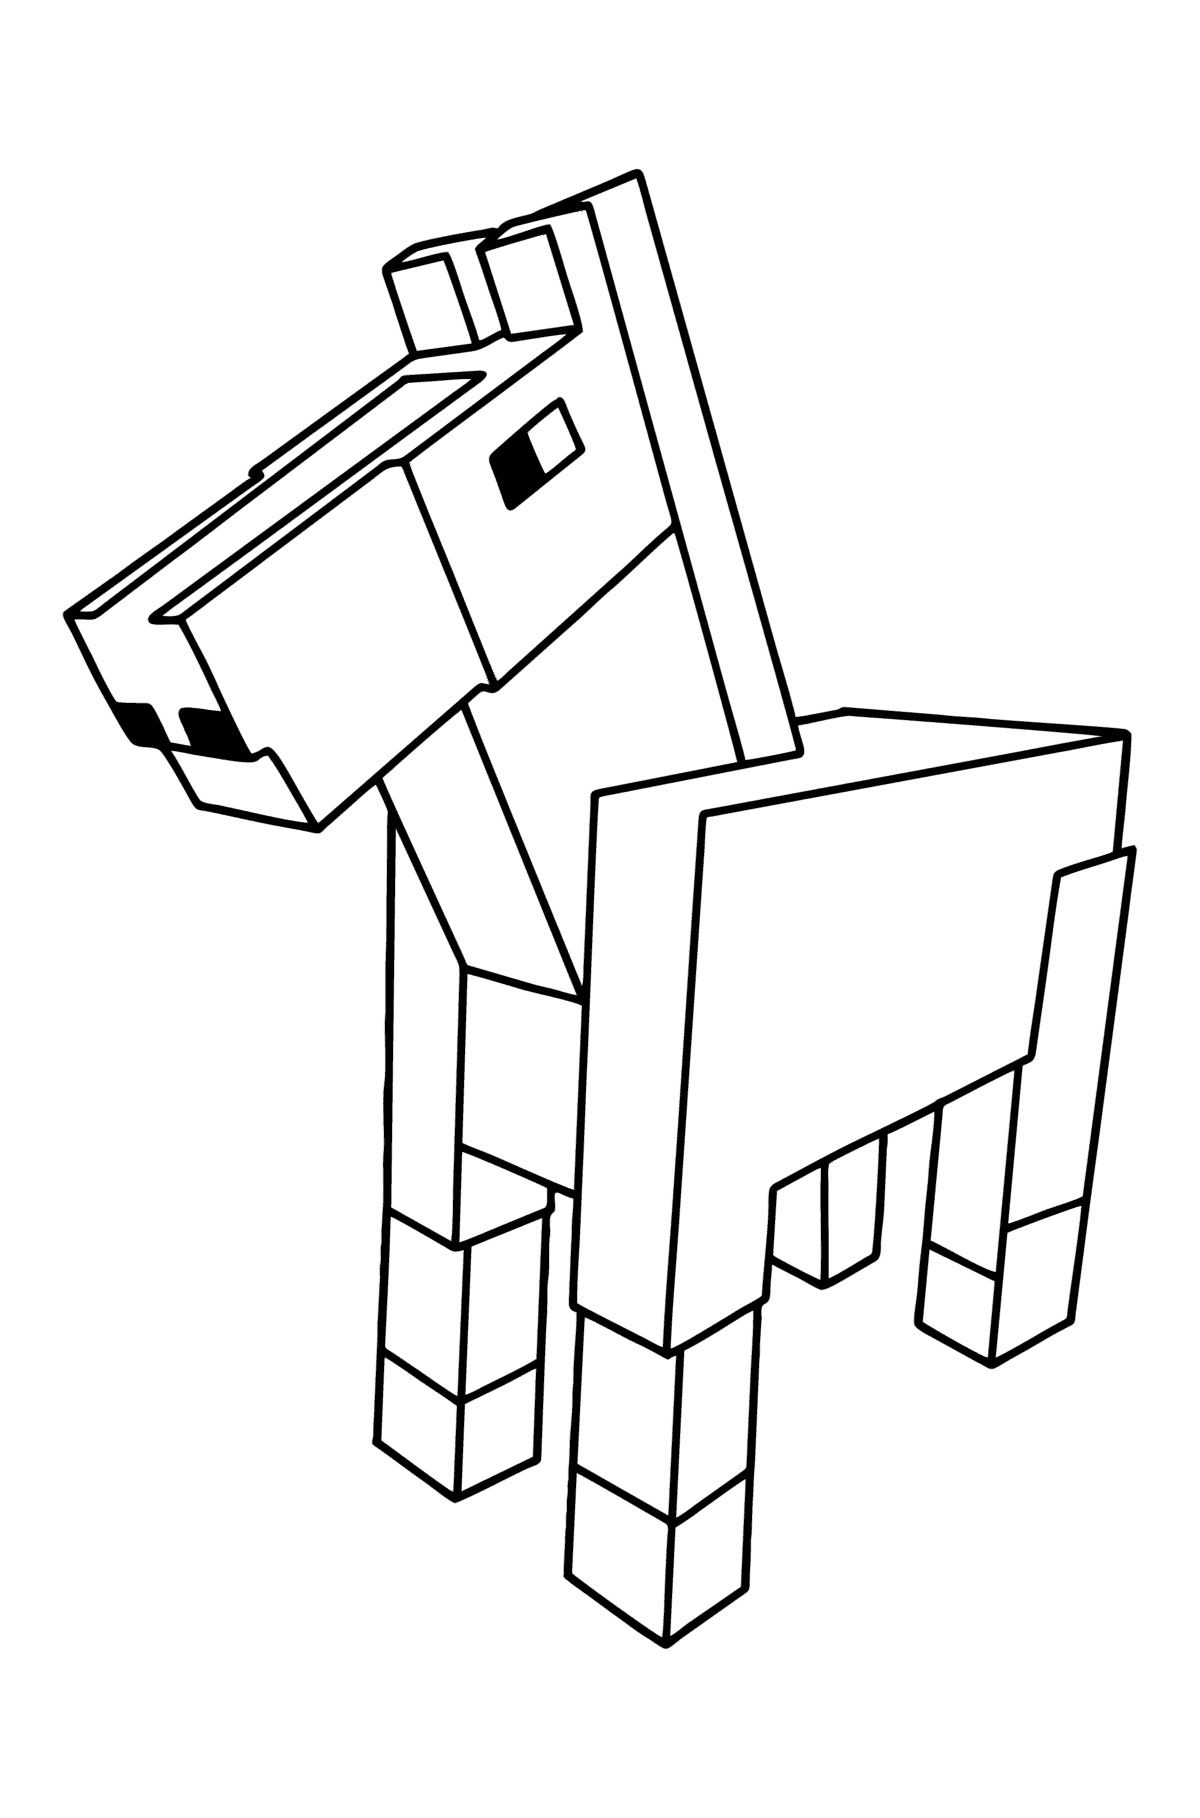 Desenho de Minecraft Horse para colorir - Imagens para Colorir para Crianças